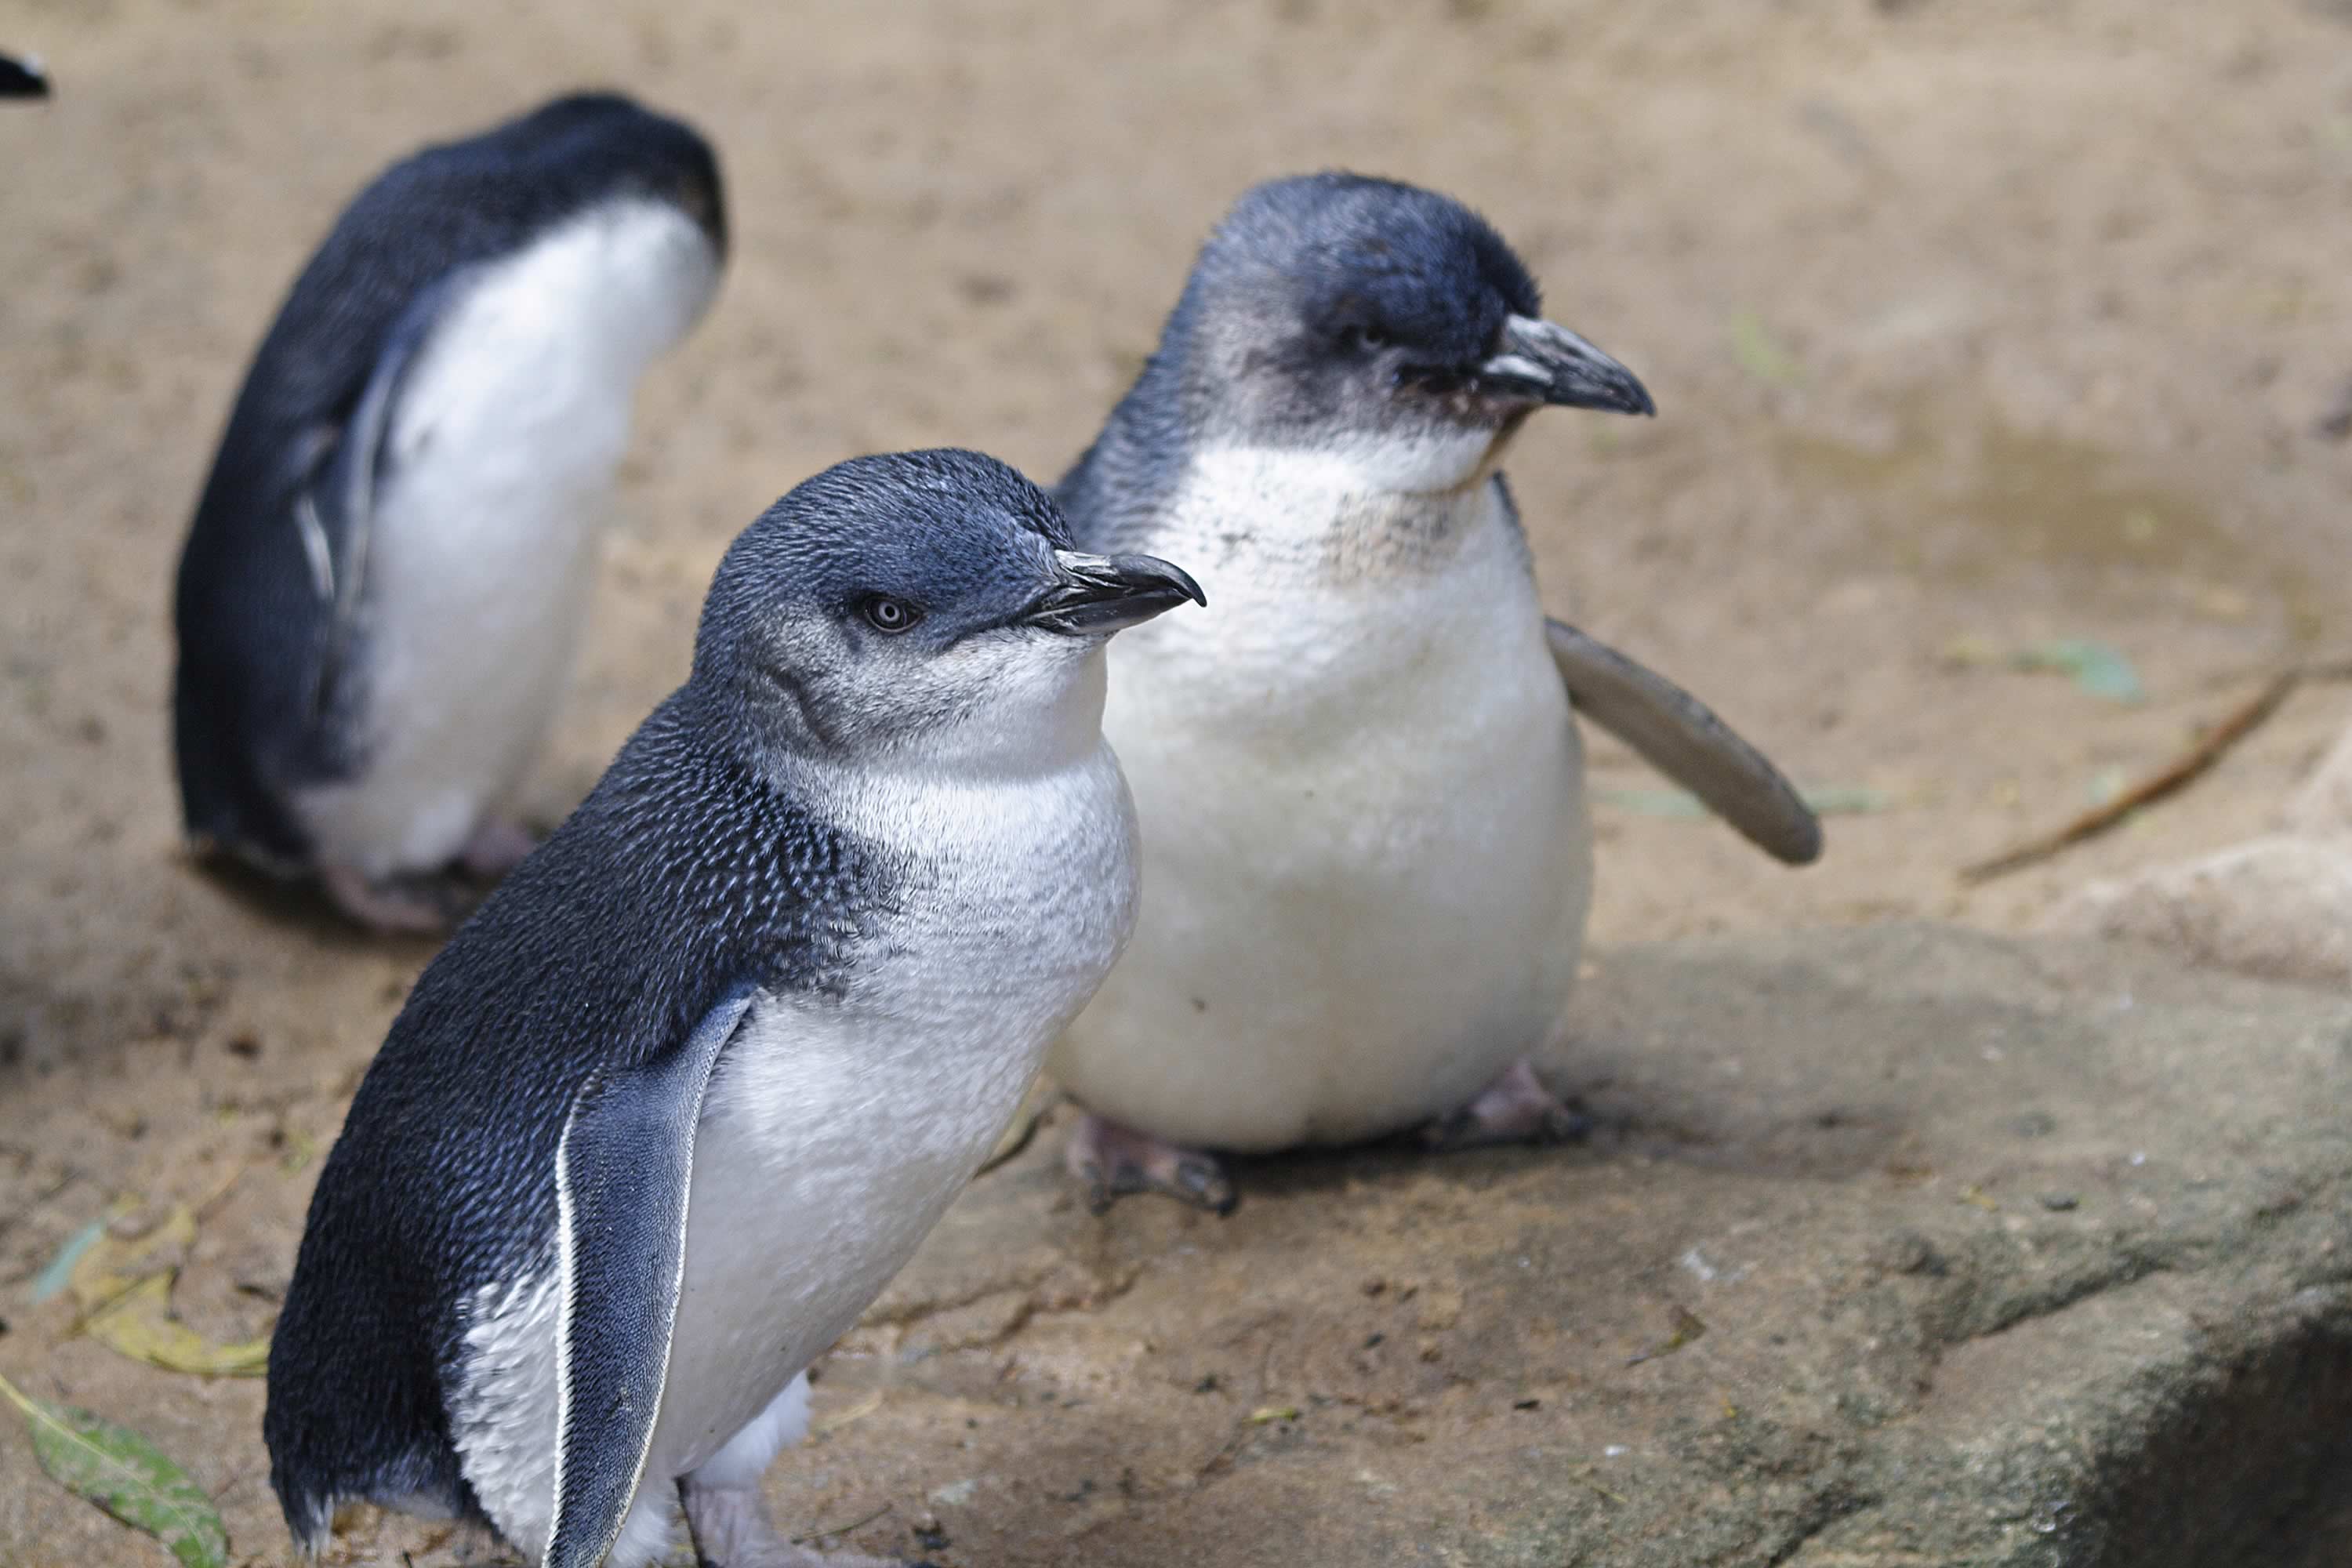  Australian fairy penguins. Photo: iStock / jswax.